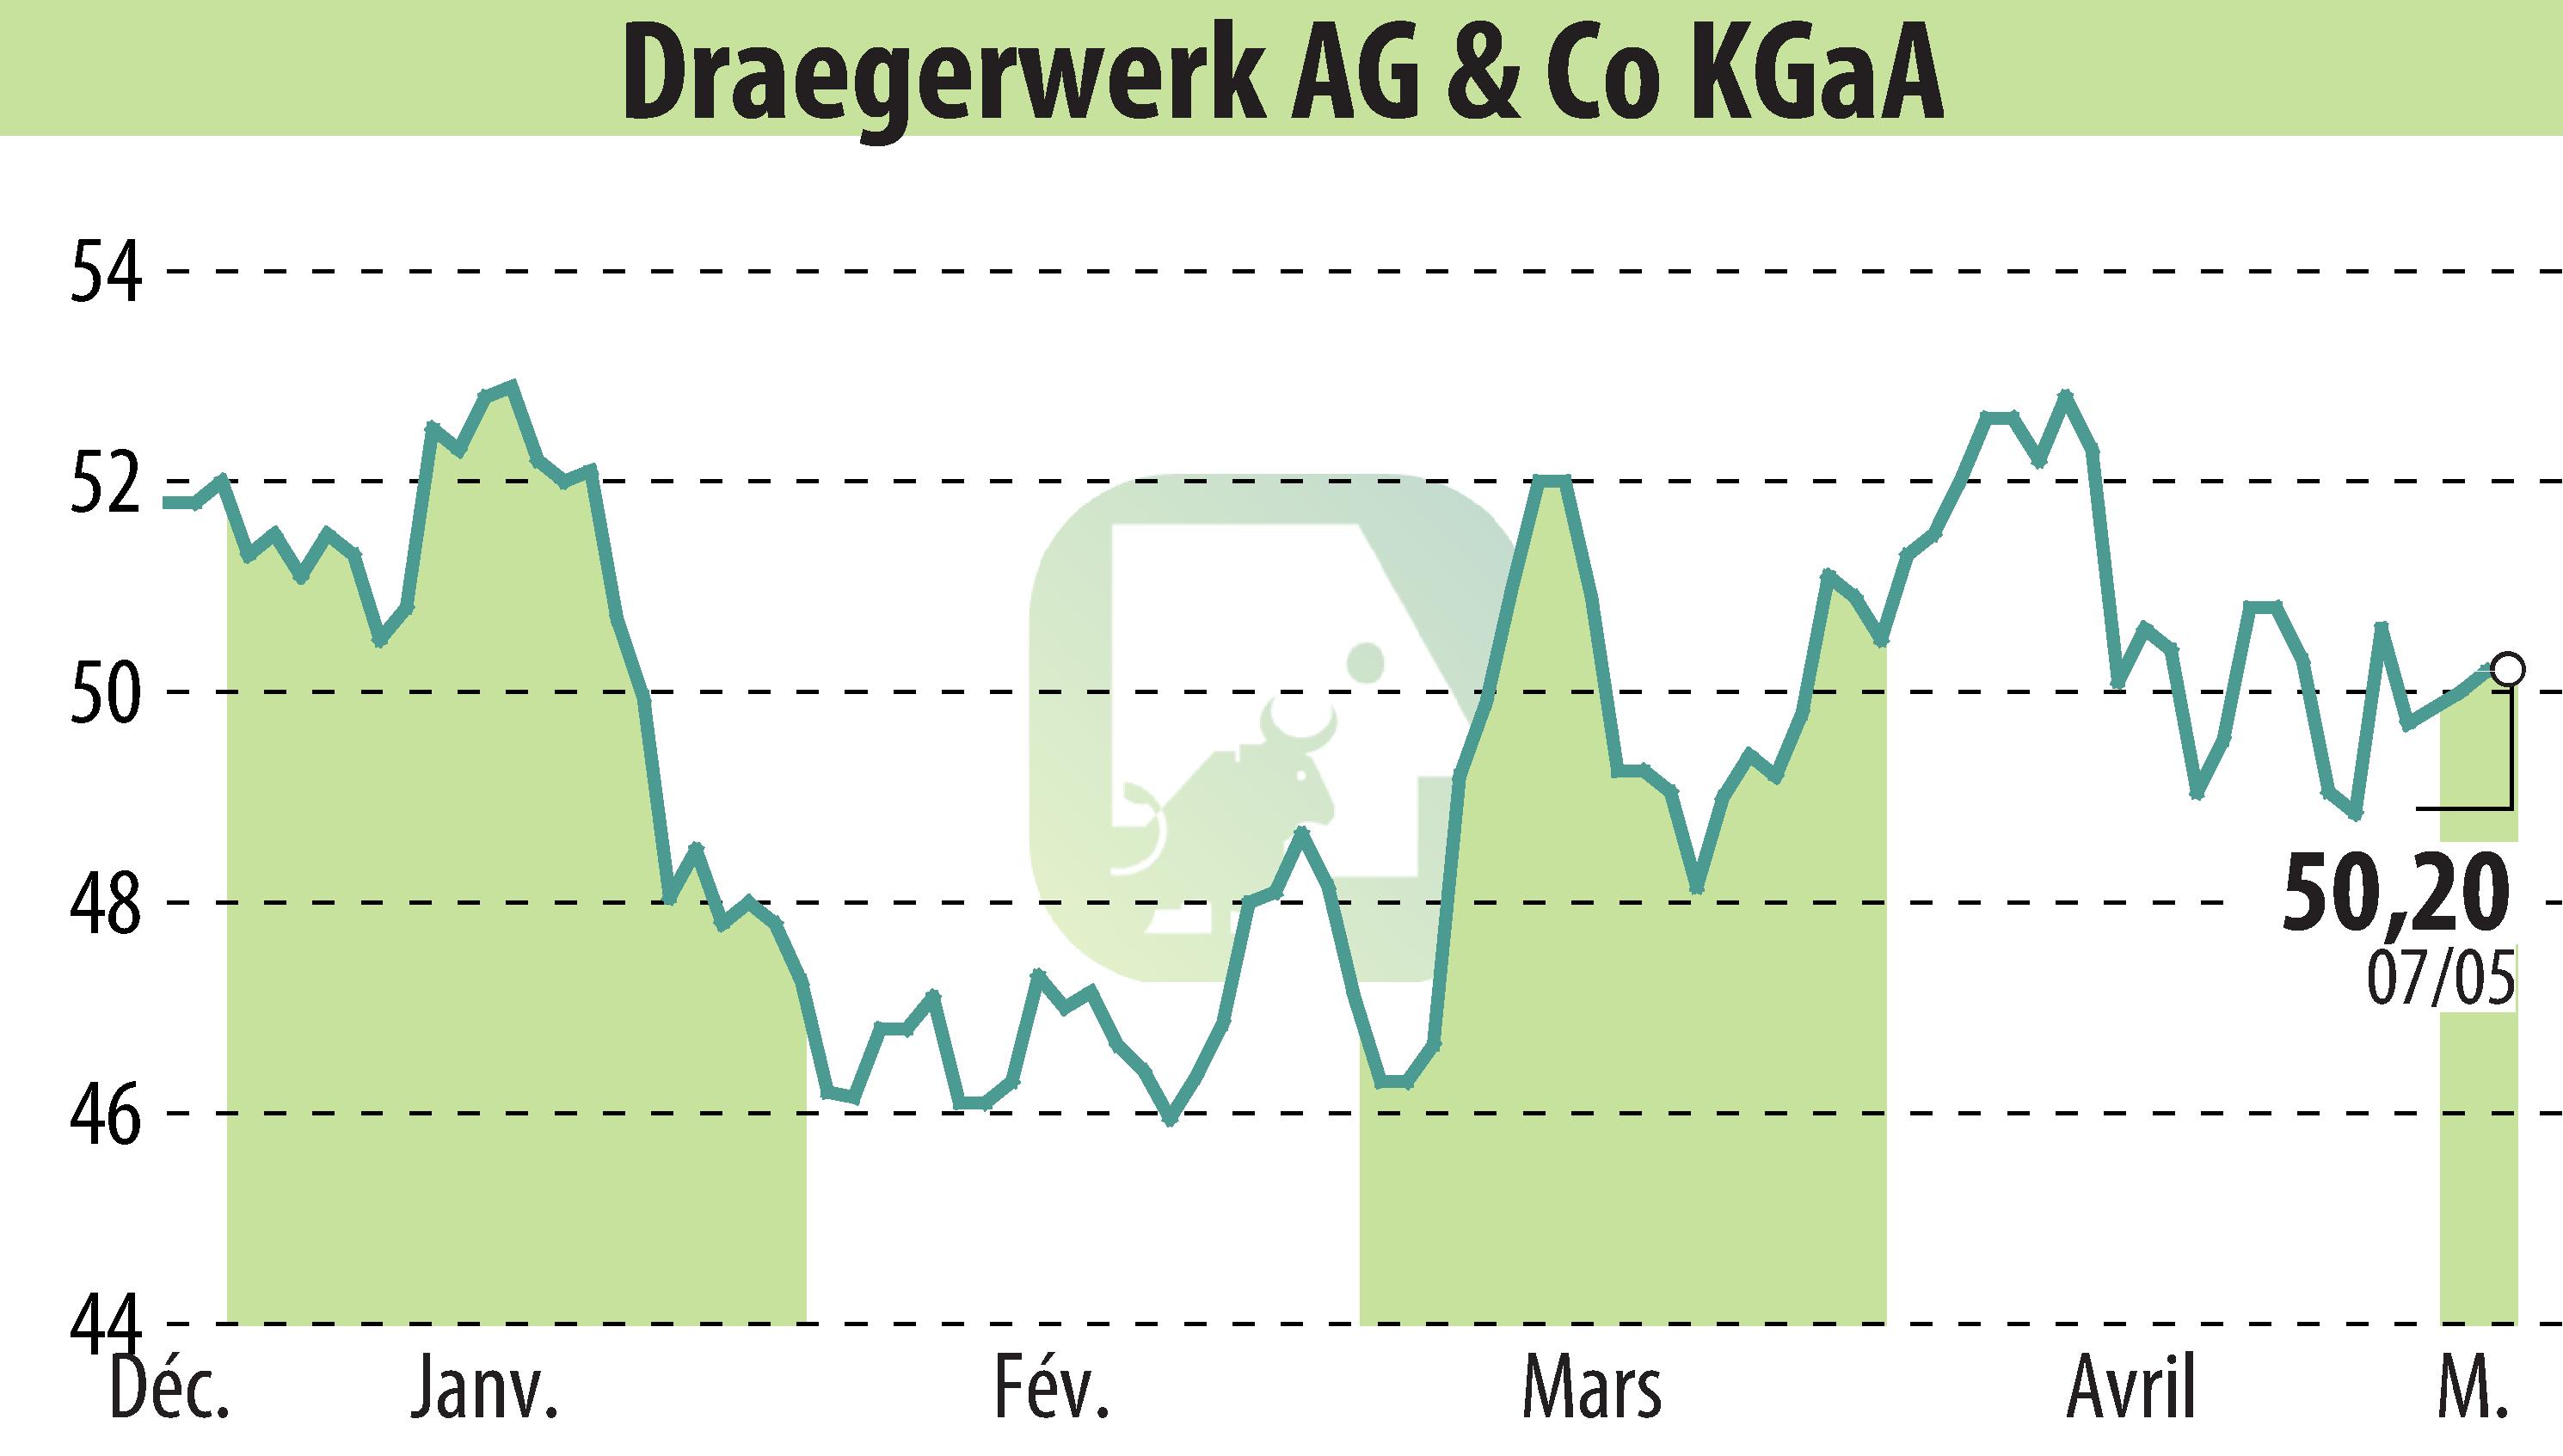 Graphique de l'évolution du cours de l'action Drägerwerk AG & Co. KGaA (EBR:DRW3).